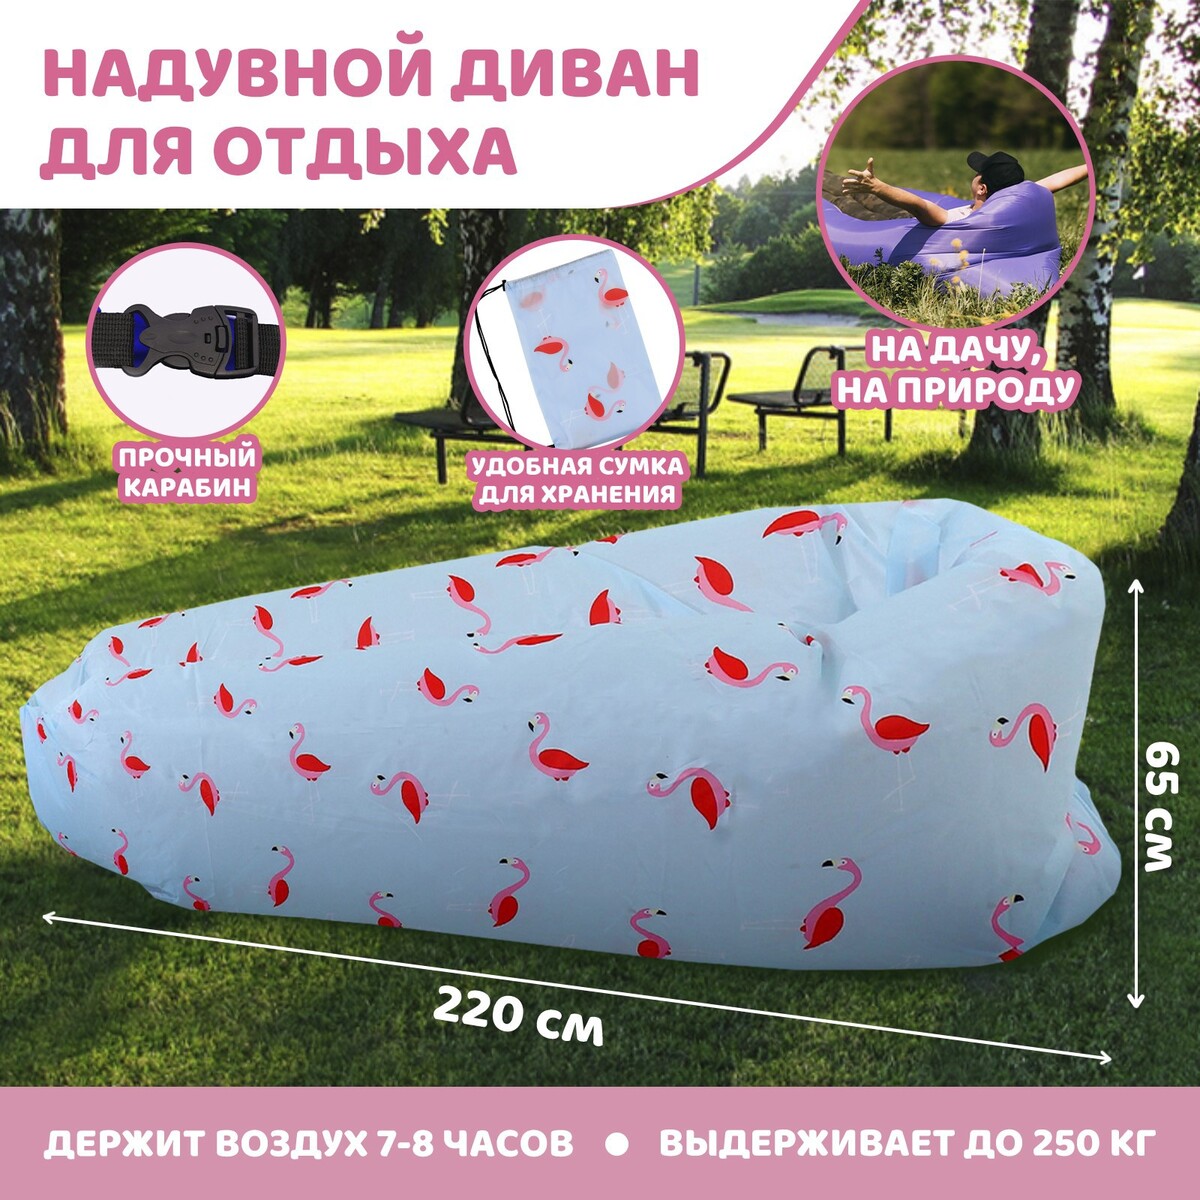 Надувной мешок для отдыха шорты для активного отдыха maier lulaka sleet 2020 230010 0905